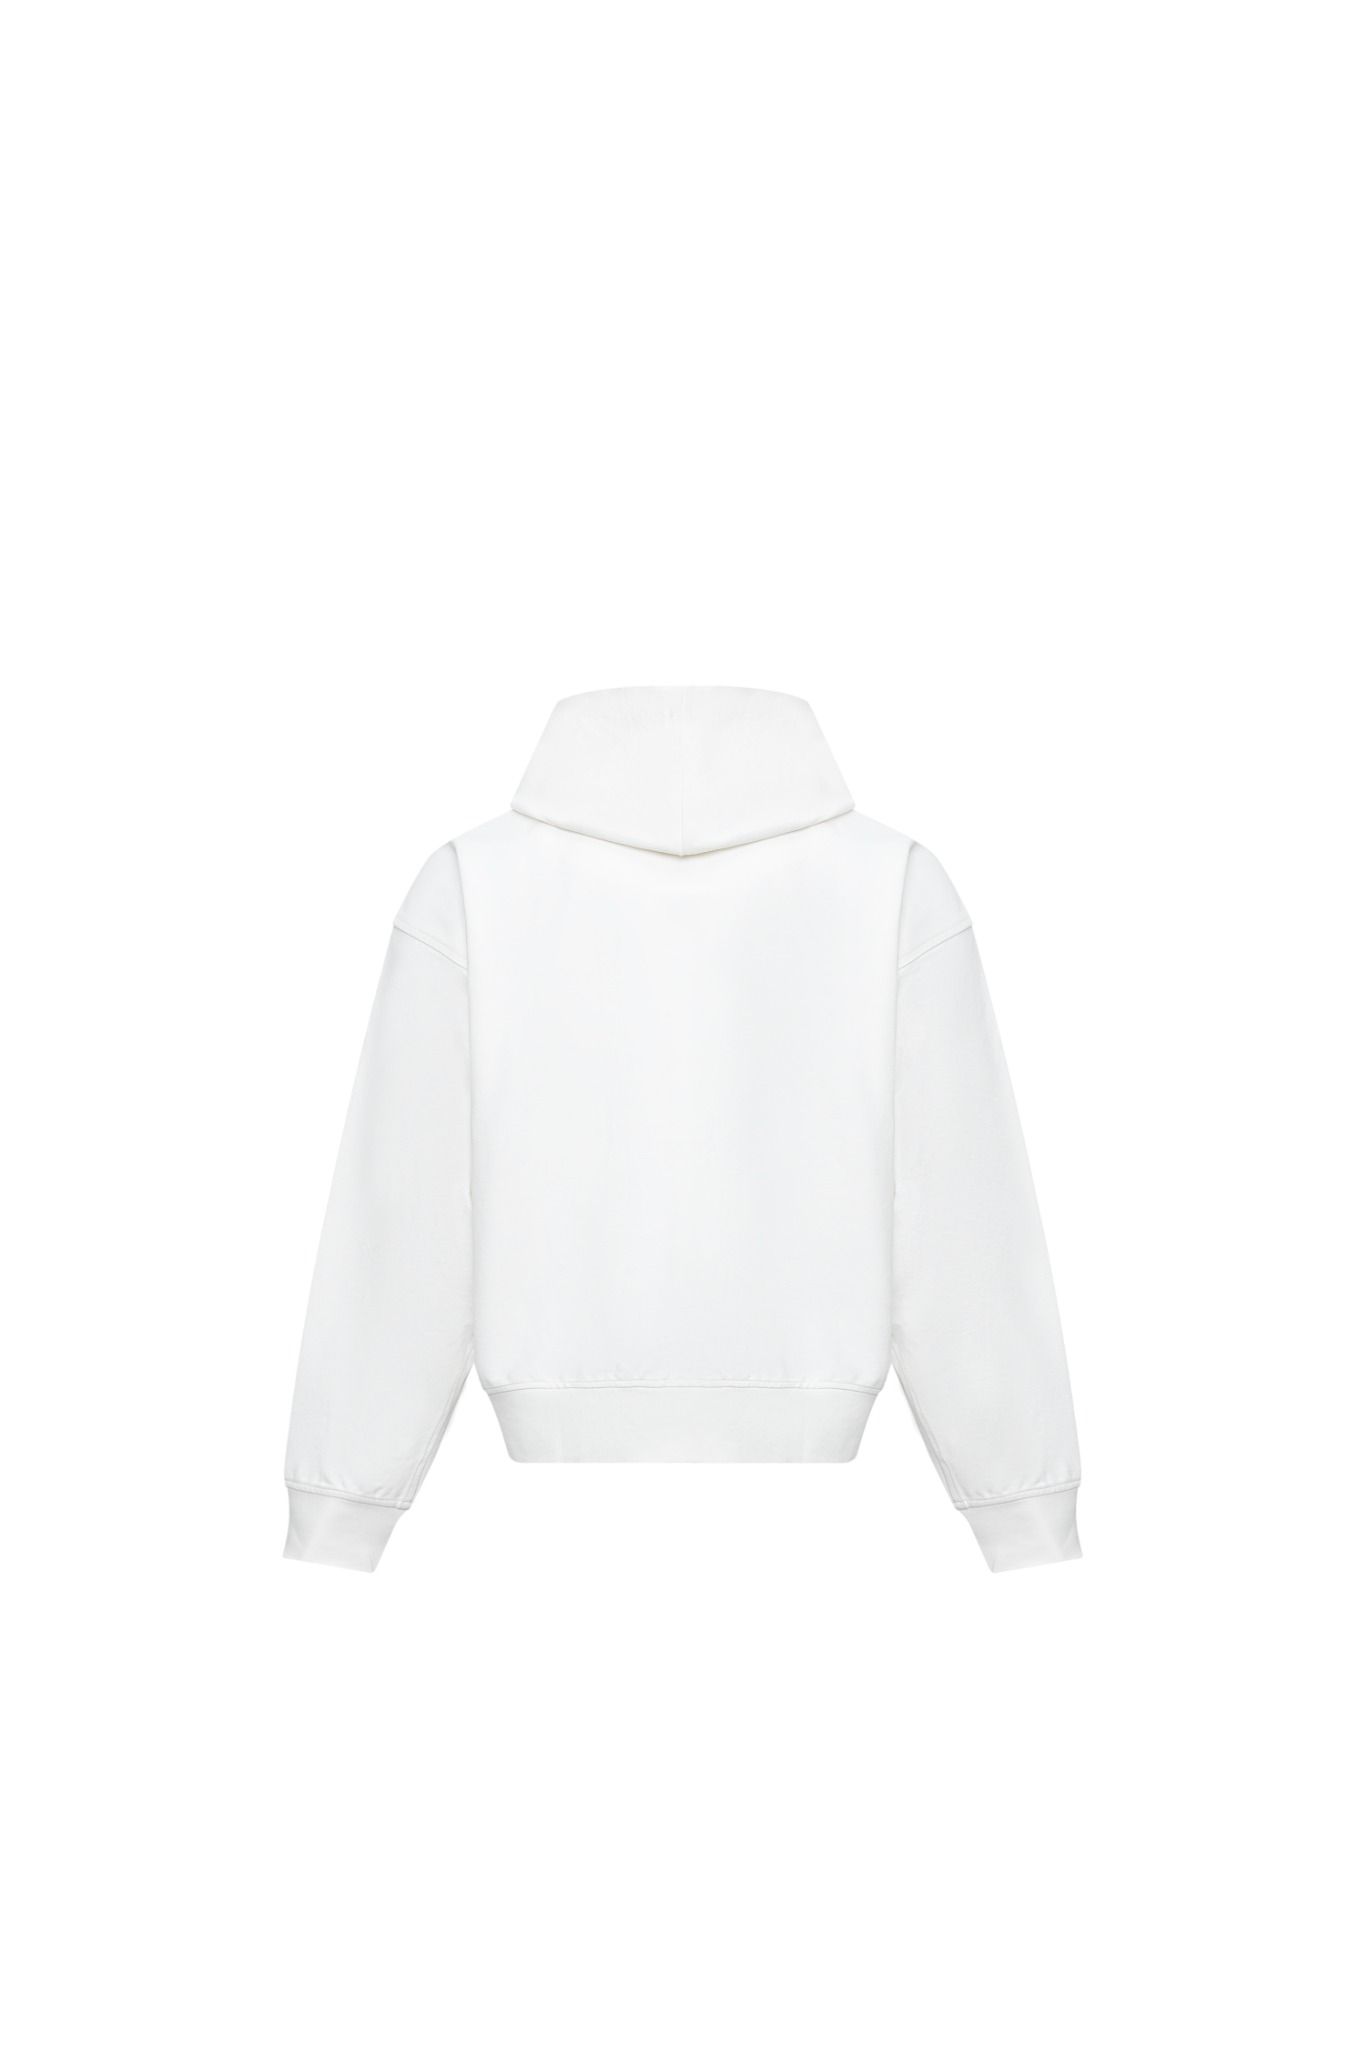  23'FZ hoodie / White 